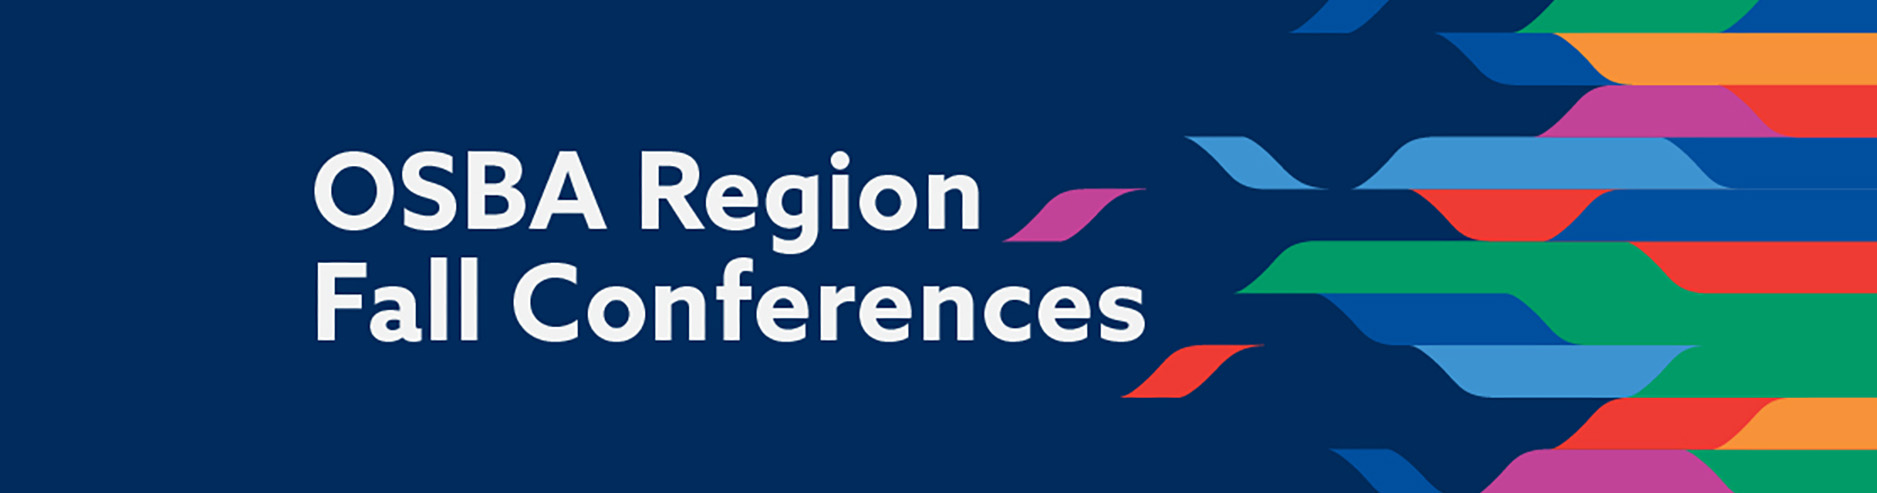 OSBA Region Fall Conferences